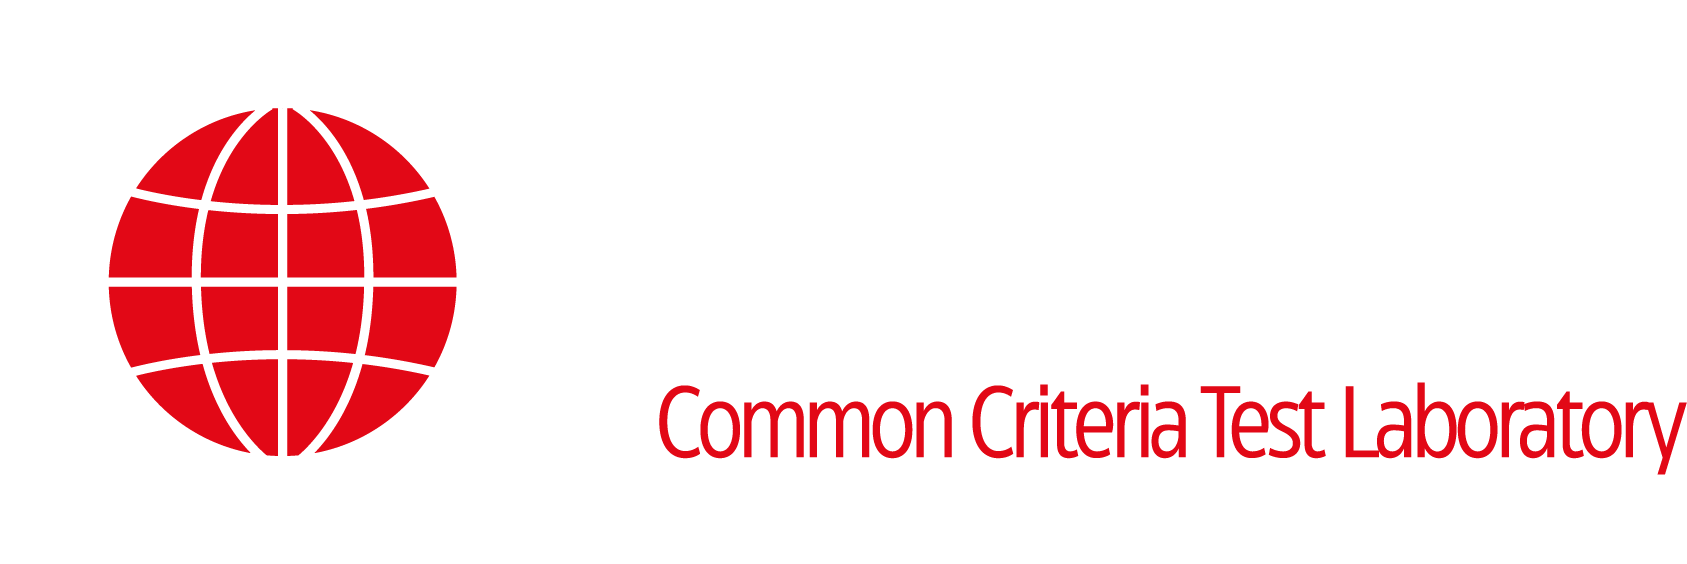 oktem-logo-2@4x